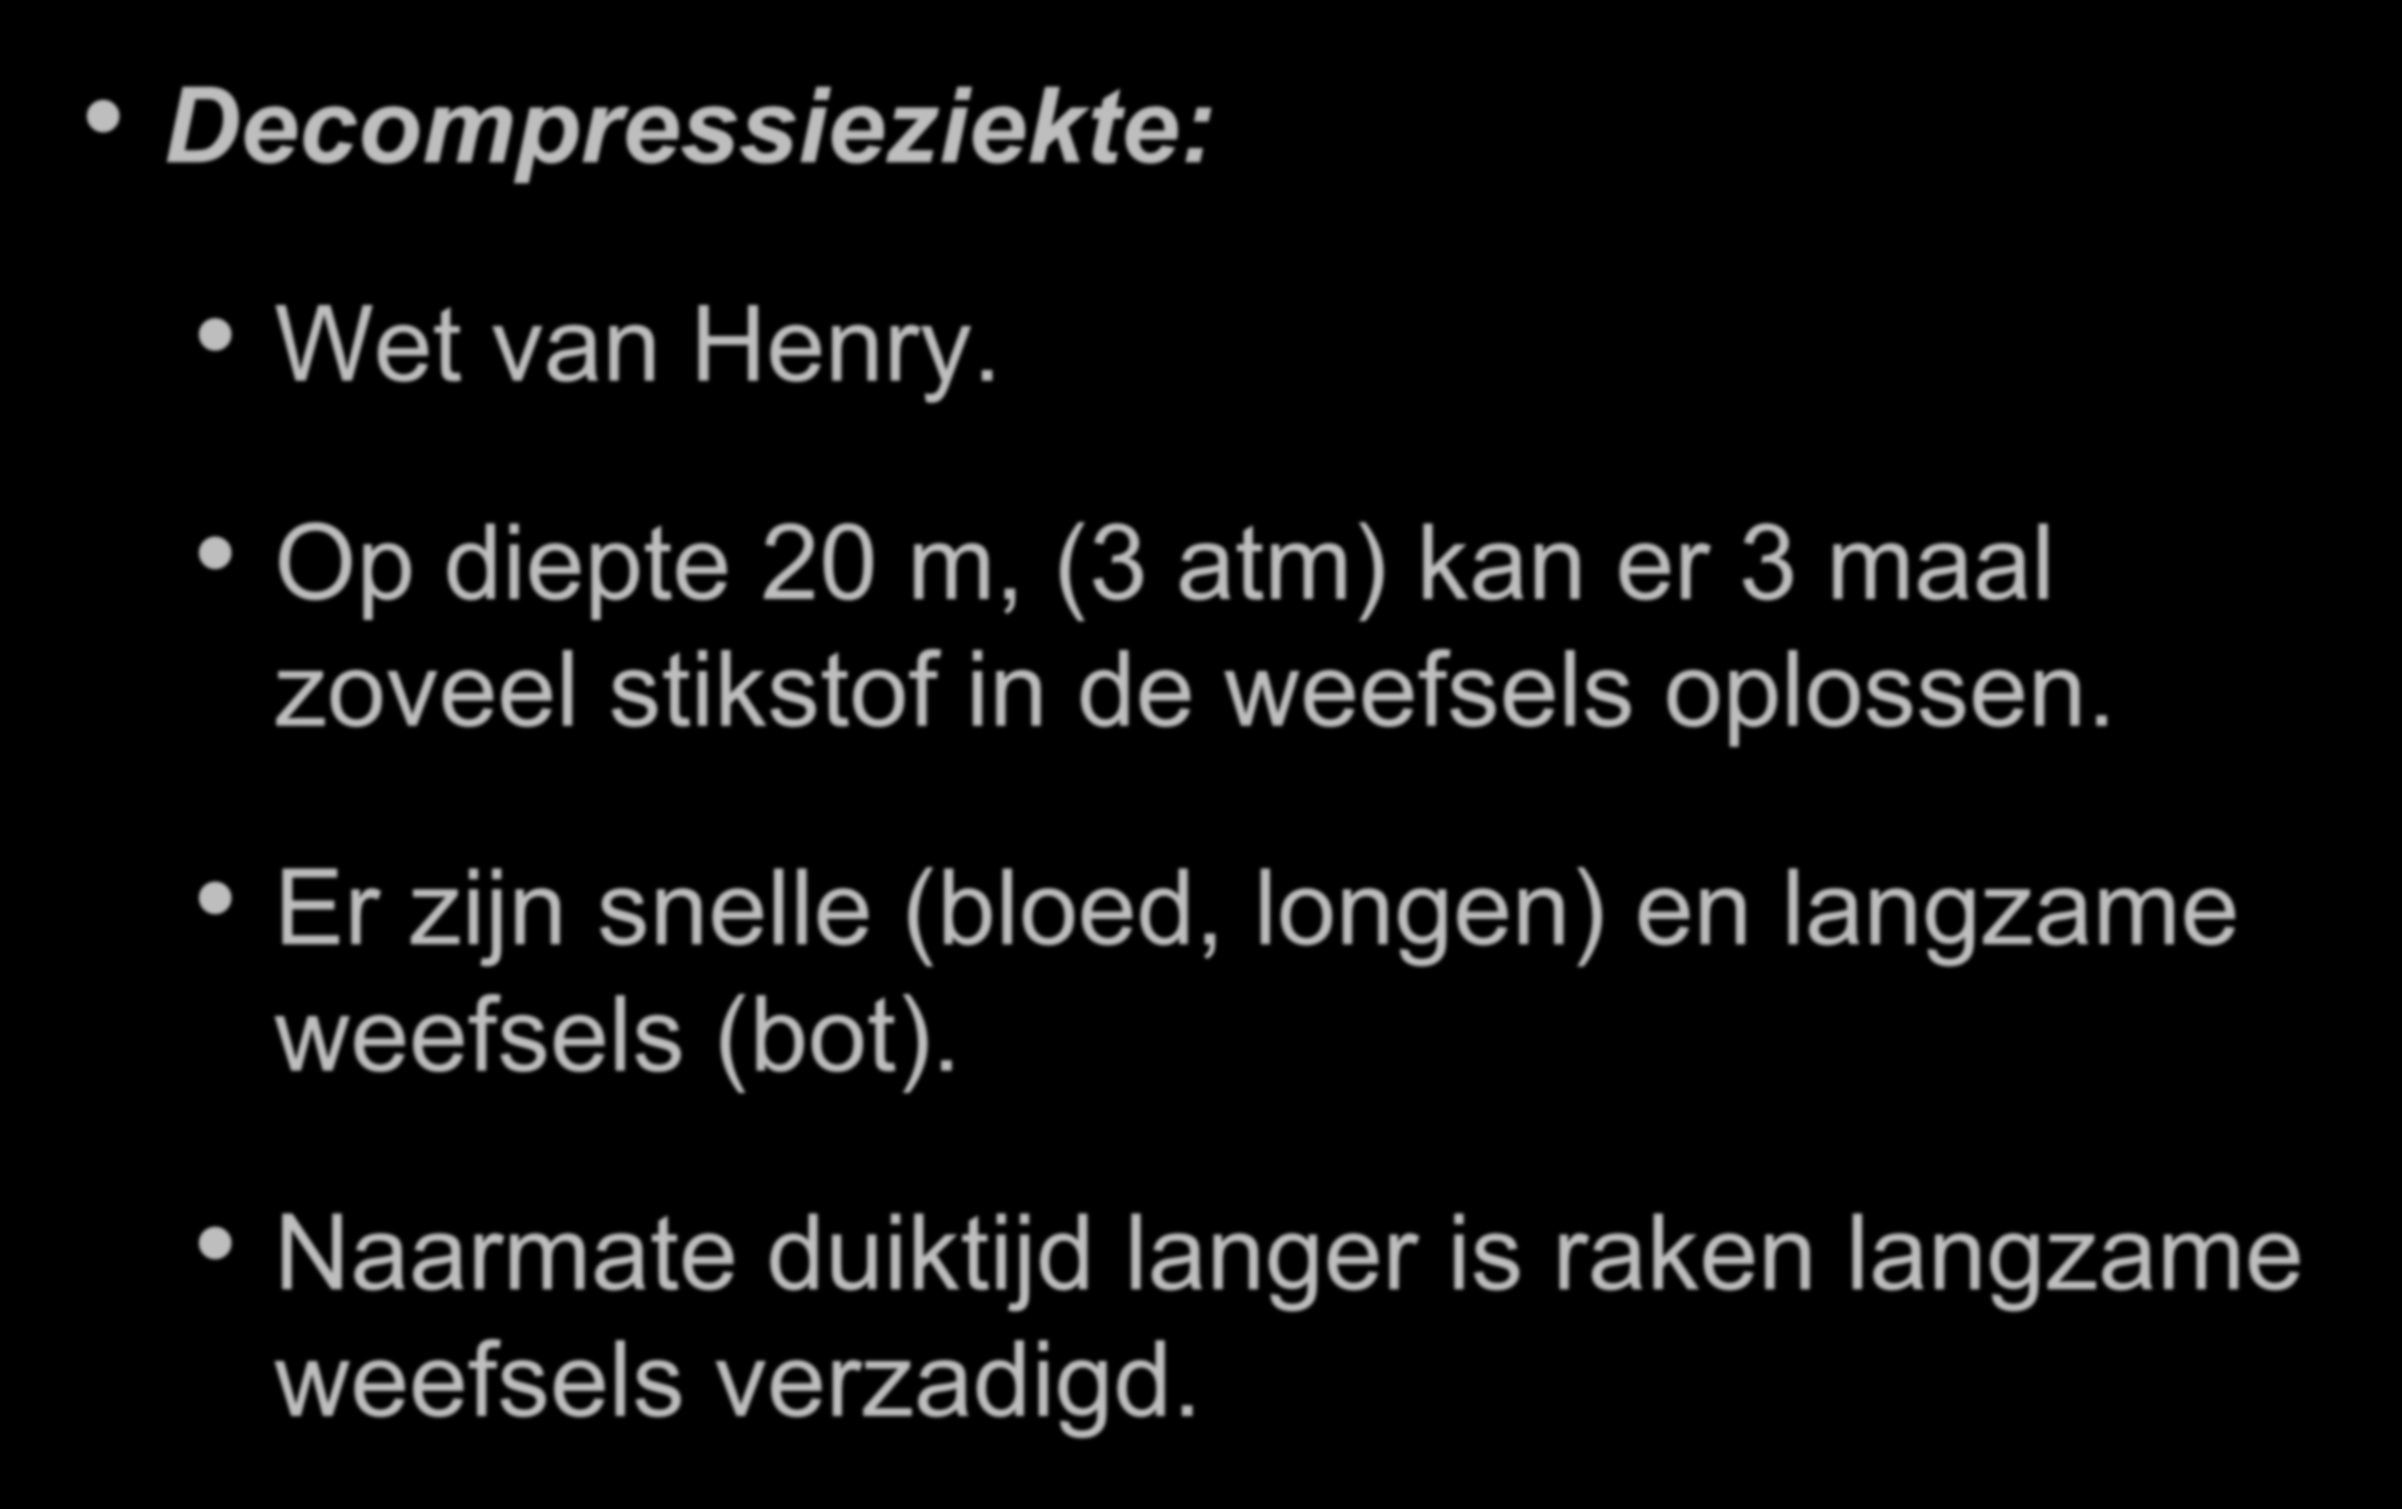 Duikersziekten Decompressieziekte: Wet van Henry.